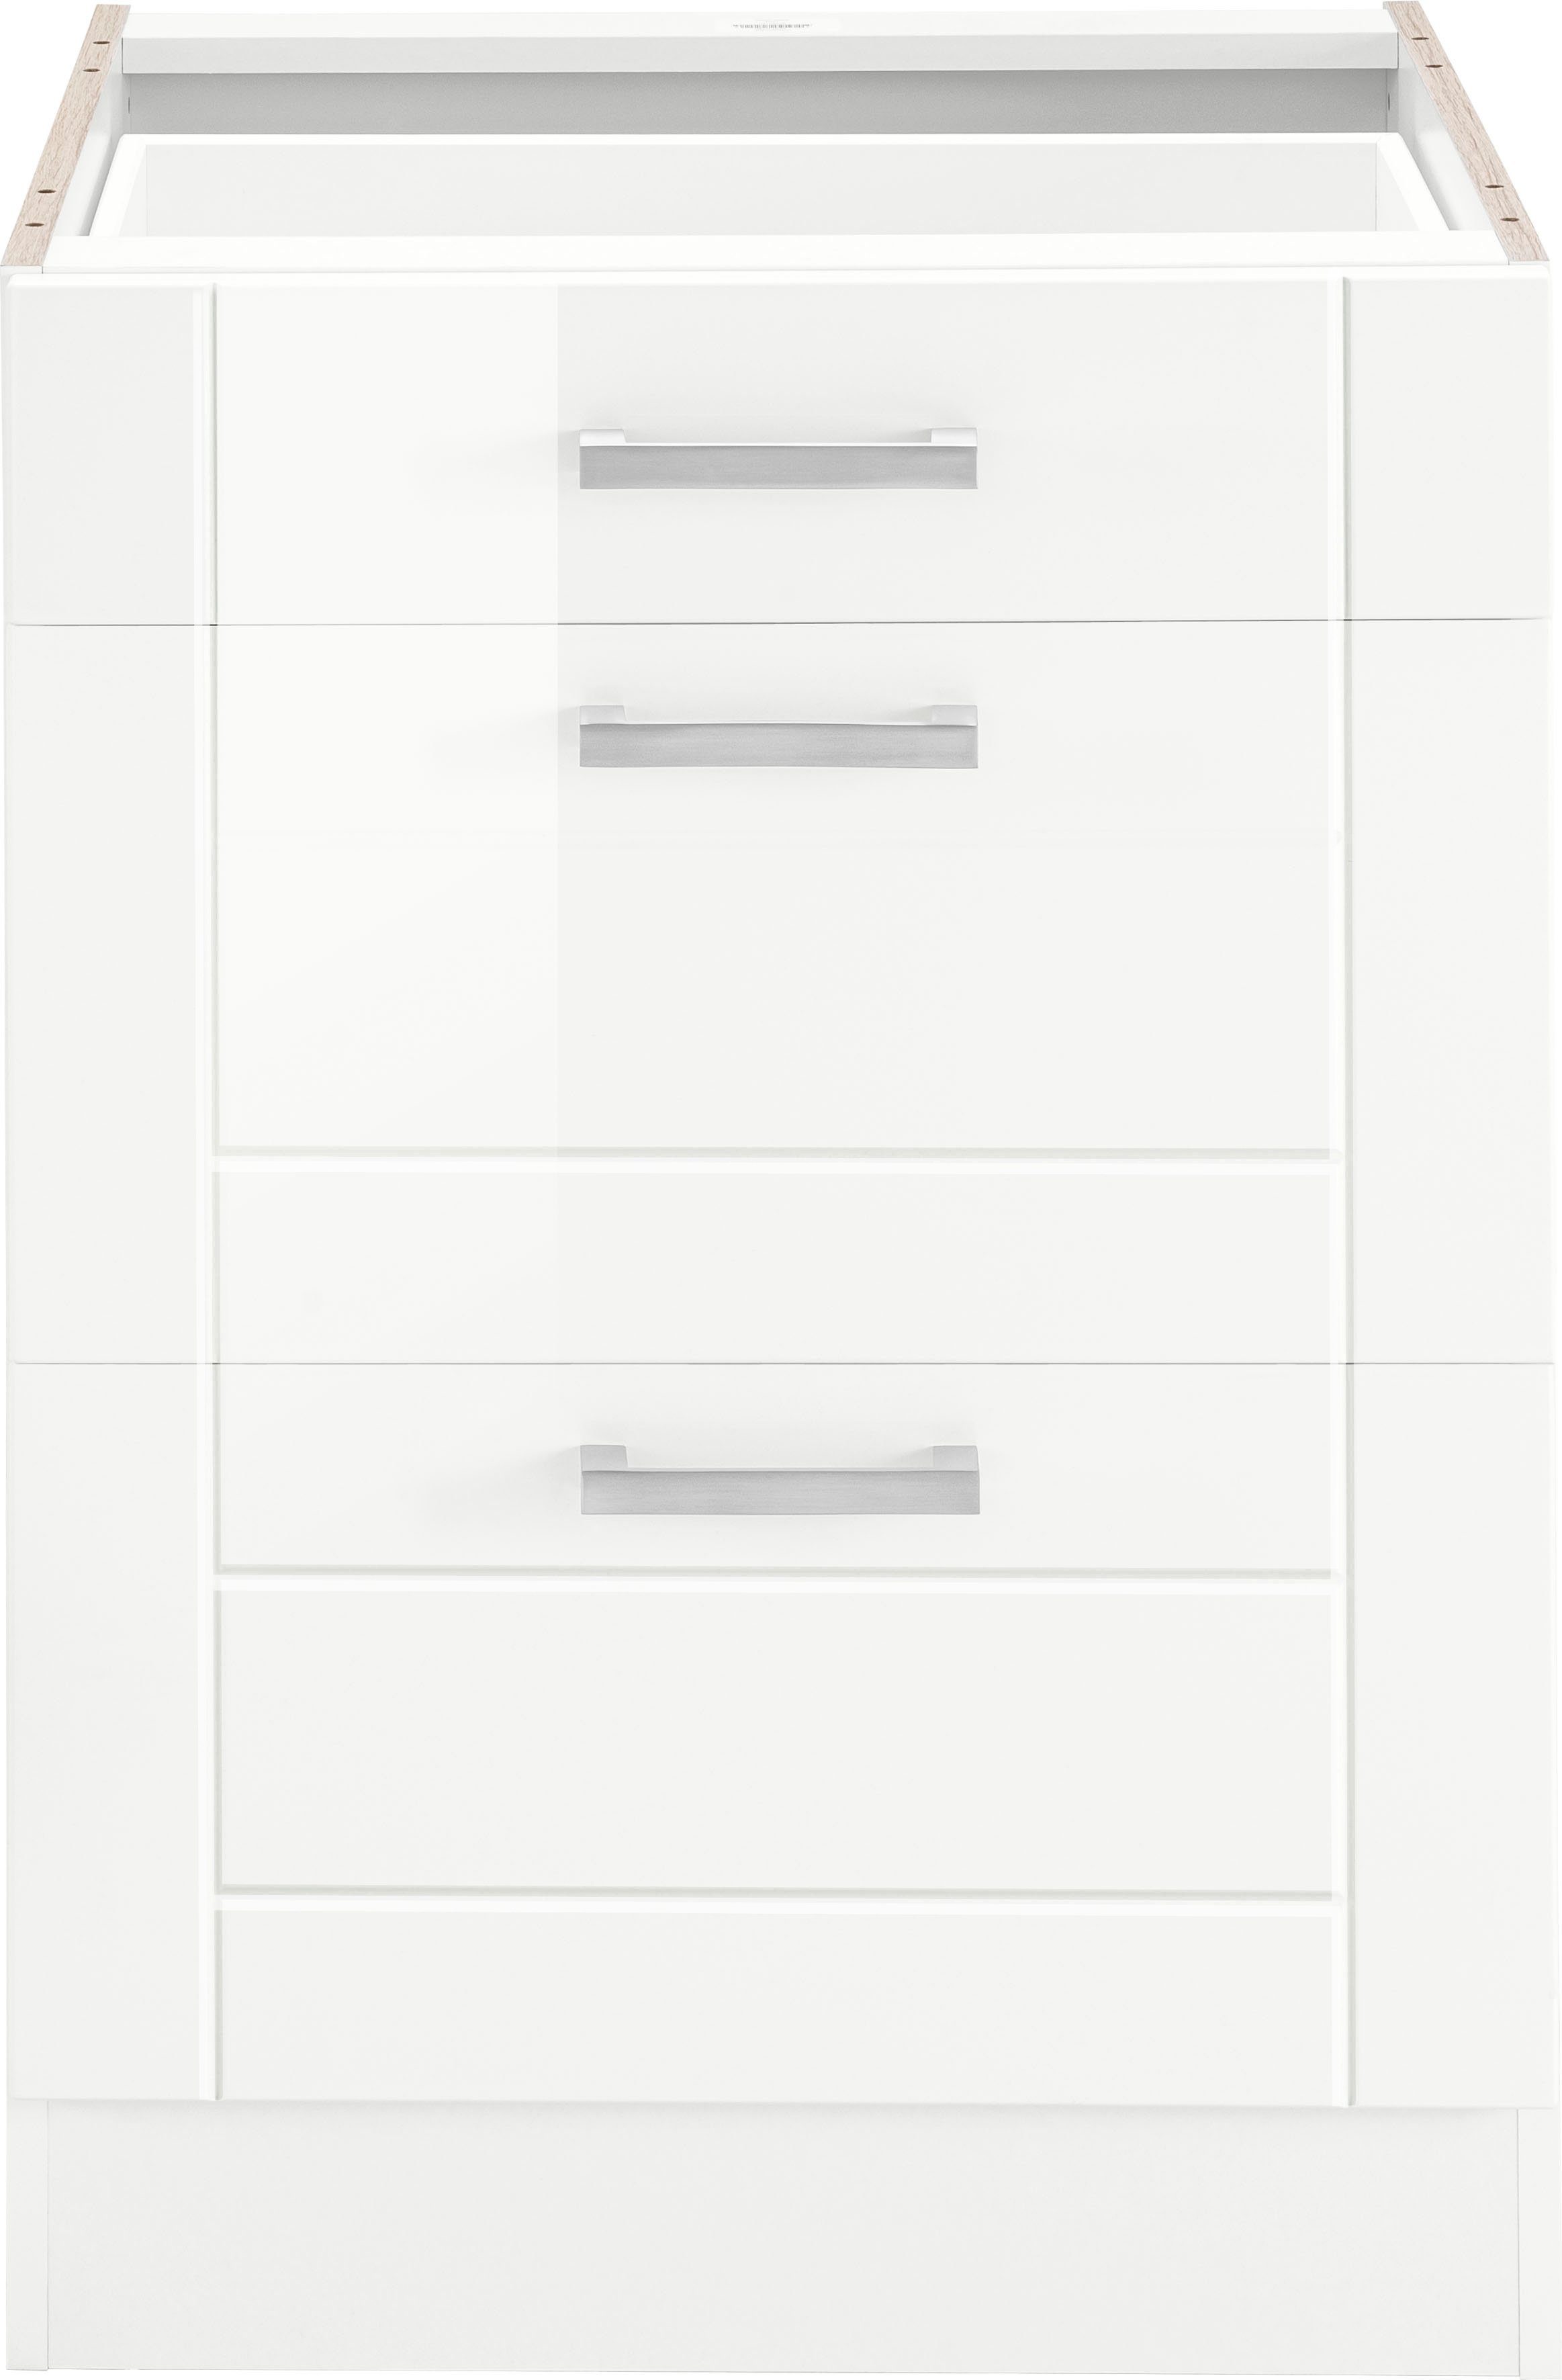 HELD MÖBEL Auszugsunterschrank Tinnum 60 cm | Metallgriff, weiß breit, MDF-Fronten, 1 Schubkasten, weiß 2 Auszüge